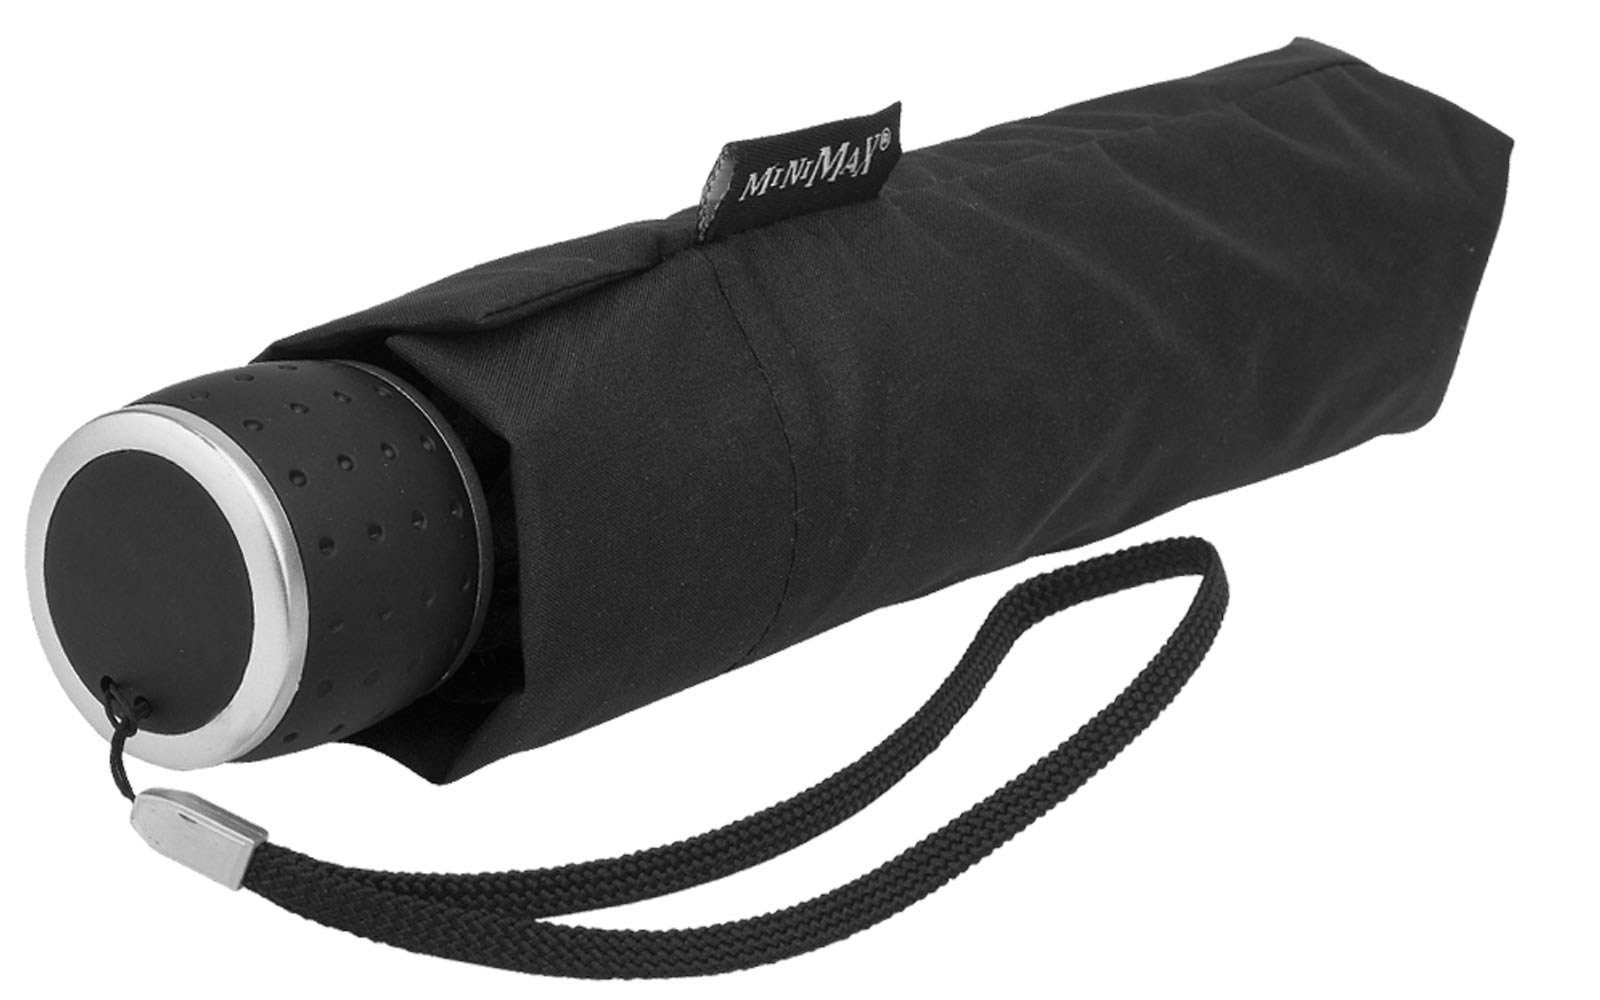 Impliva Taschenregenschirm Regenschirm leicht Öko aus recyceltem besteht schwarz Handöffner, ECO PET miniMAX® Stoff